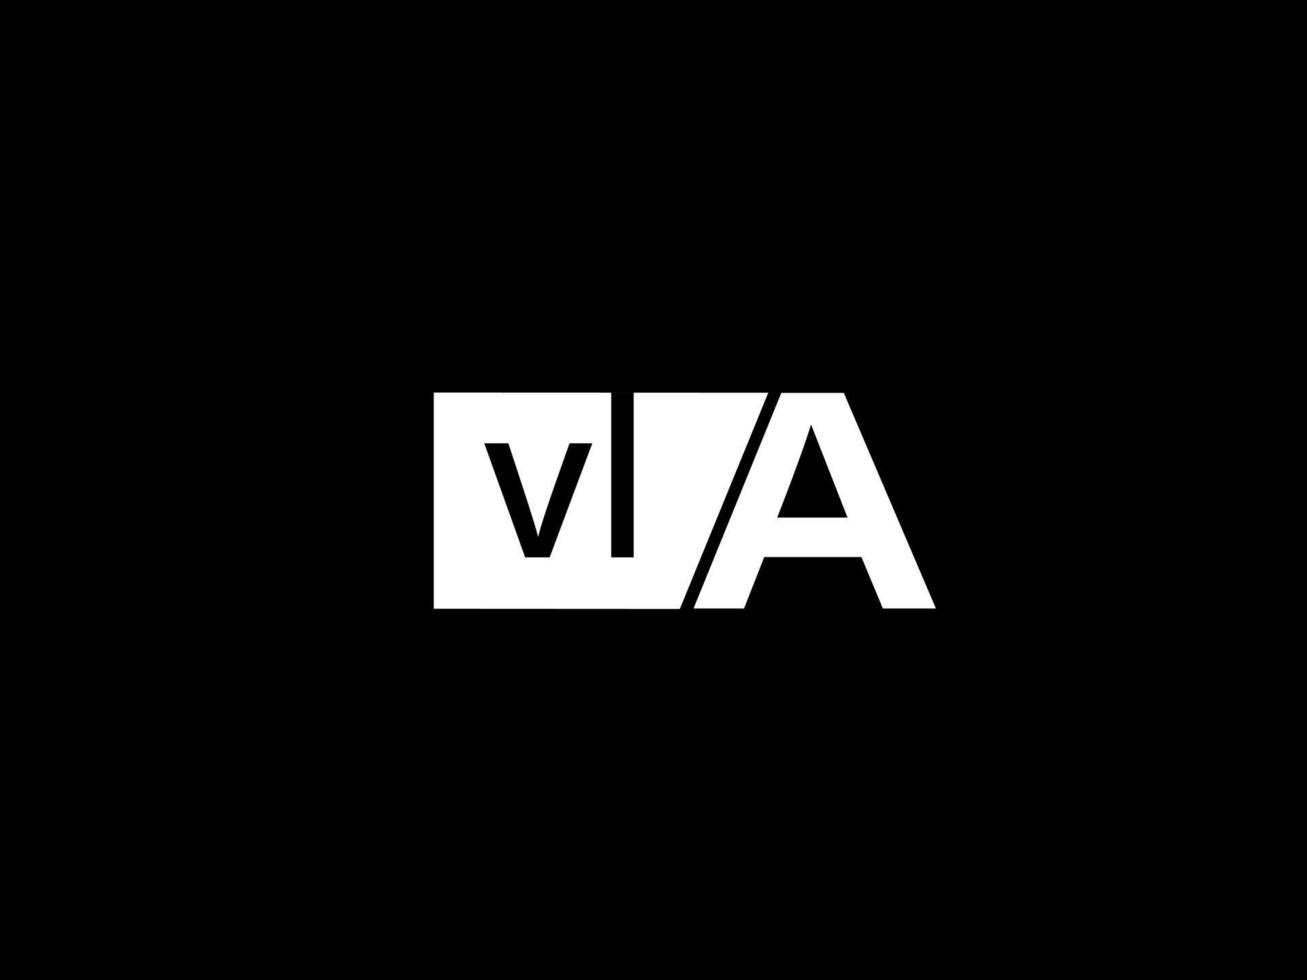 VLA-Logo und Grafikdesign Vektorgrafiken, Symbole isoliert auf schwarzem Hintergrund vektor